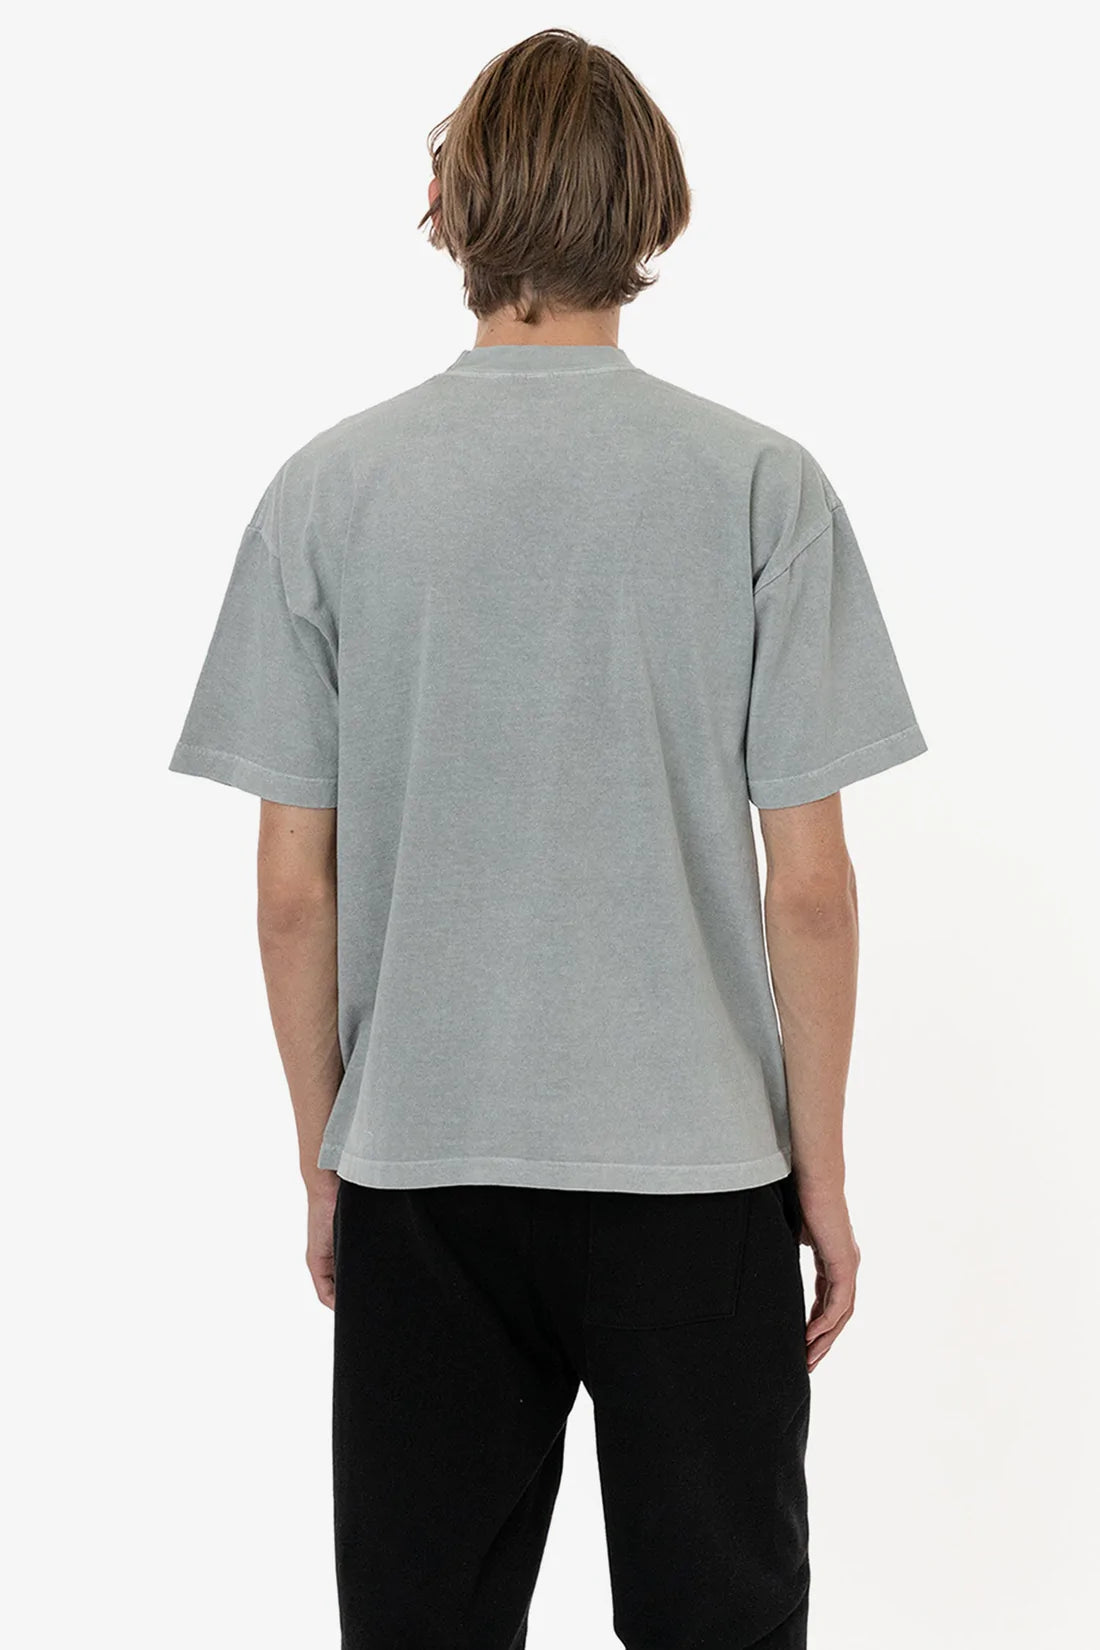 6.5 Oz. Garment Dye Crewneck T-Shirt | Plus Size | LA Apparel – Mona T-Shirt  x A2Z Wholesale Apparel